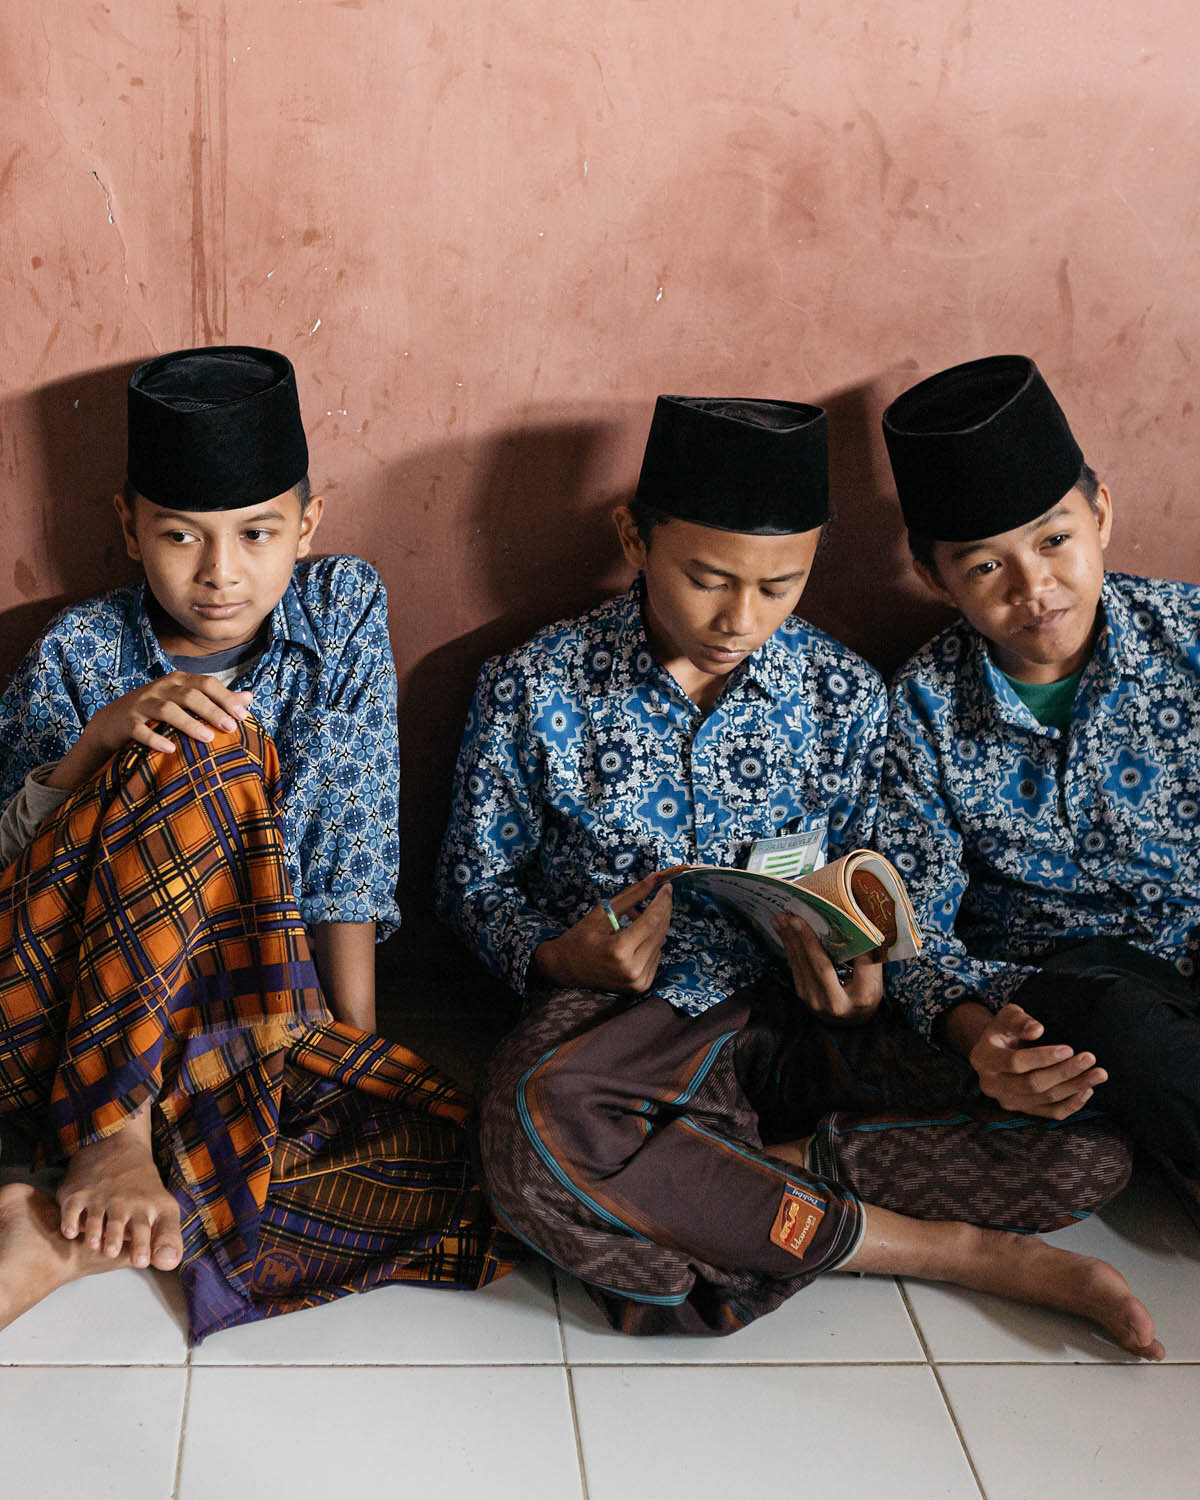 ISLAM_INDONESIA_PESANTREN_0005.jpg